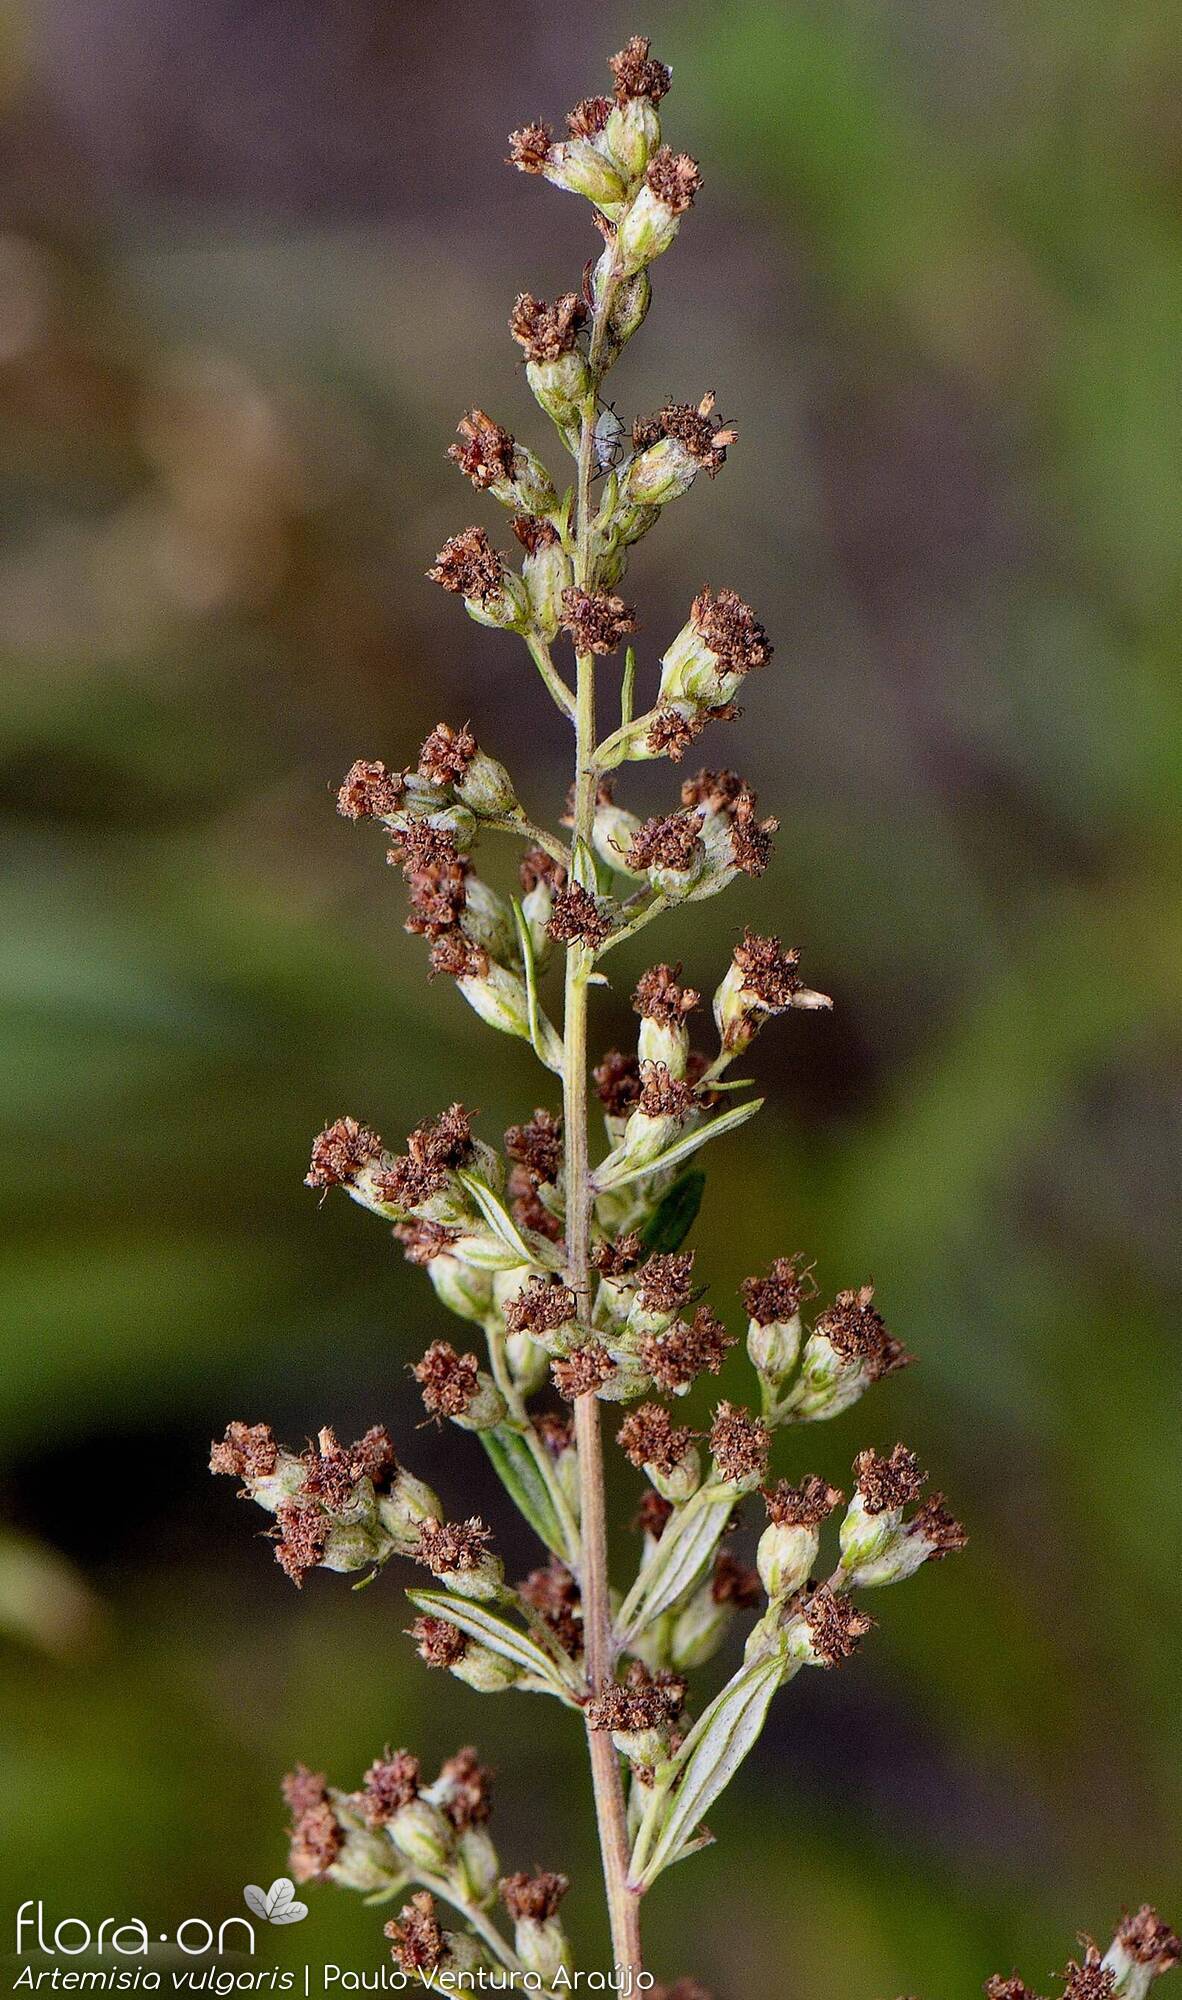 Artemisia vulgaris - Flor (geral) | Paulo Ventura Araújo; CC BY-NC 4.0